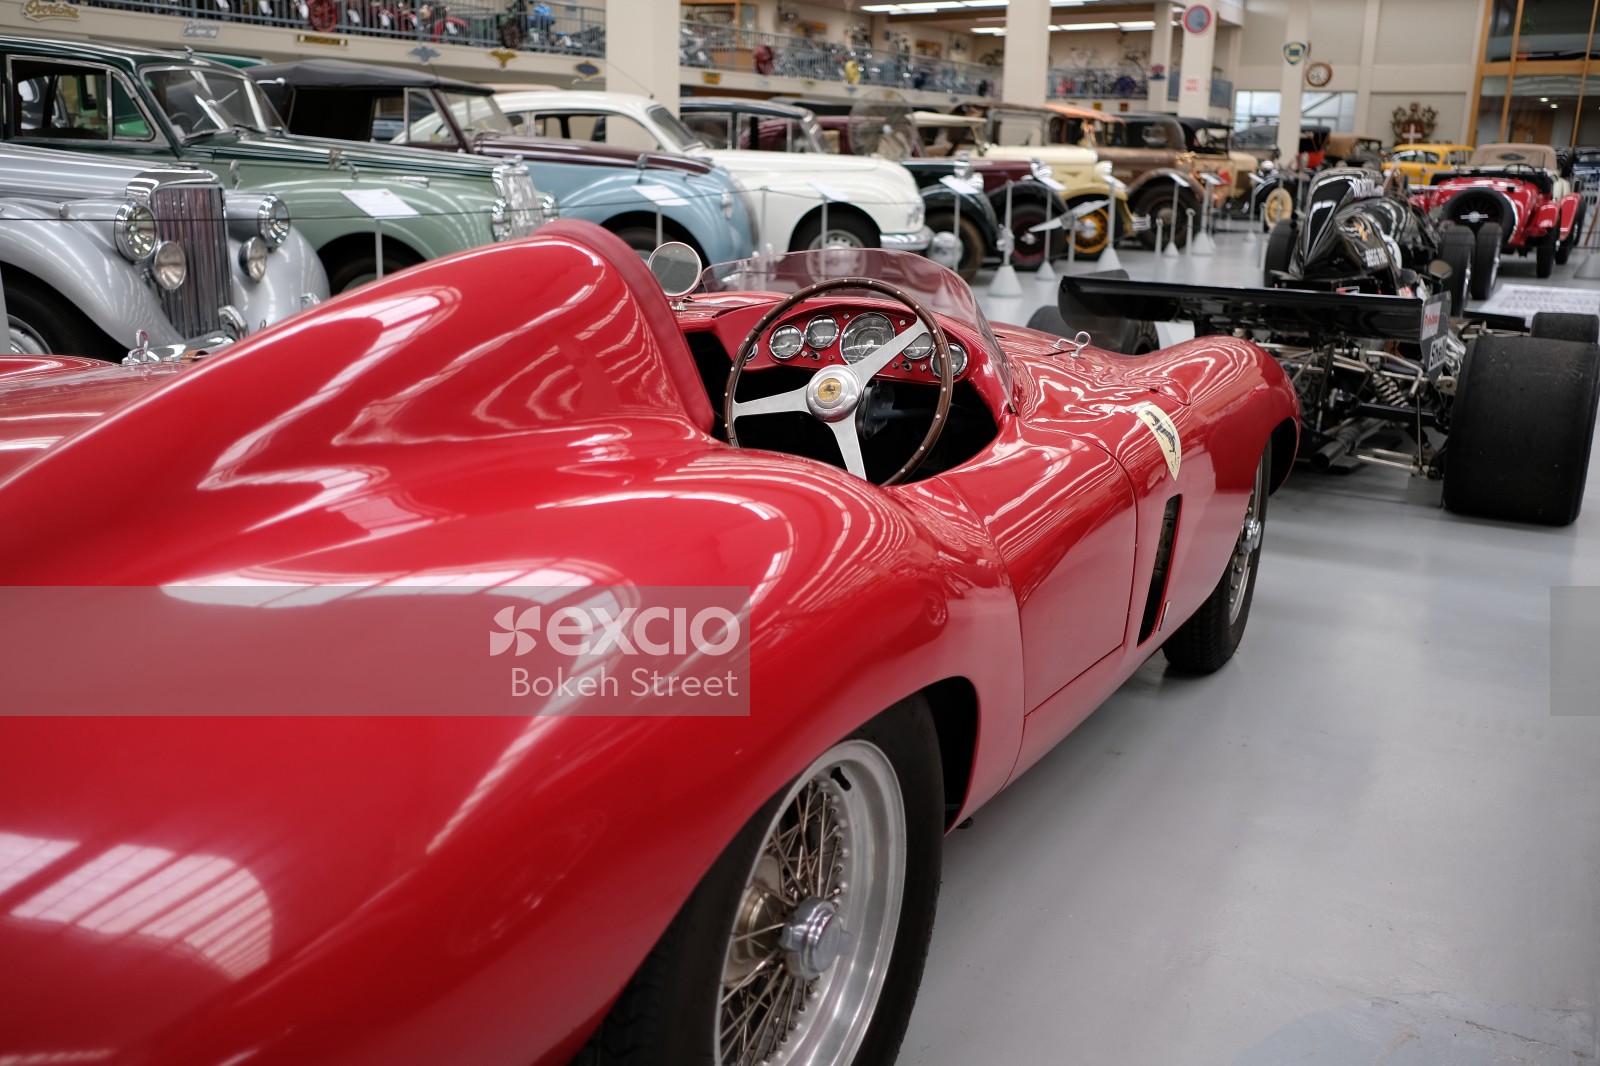 Red Ferrari classic race car at a museum